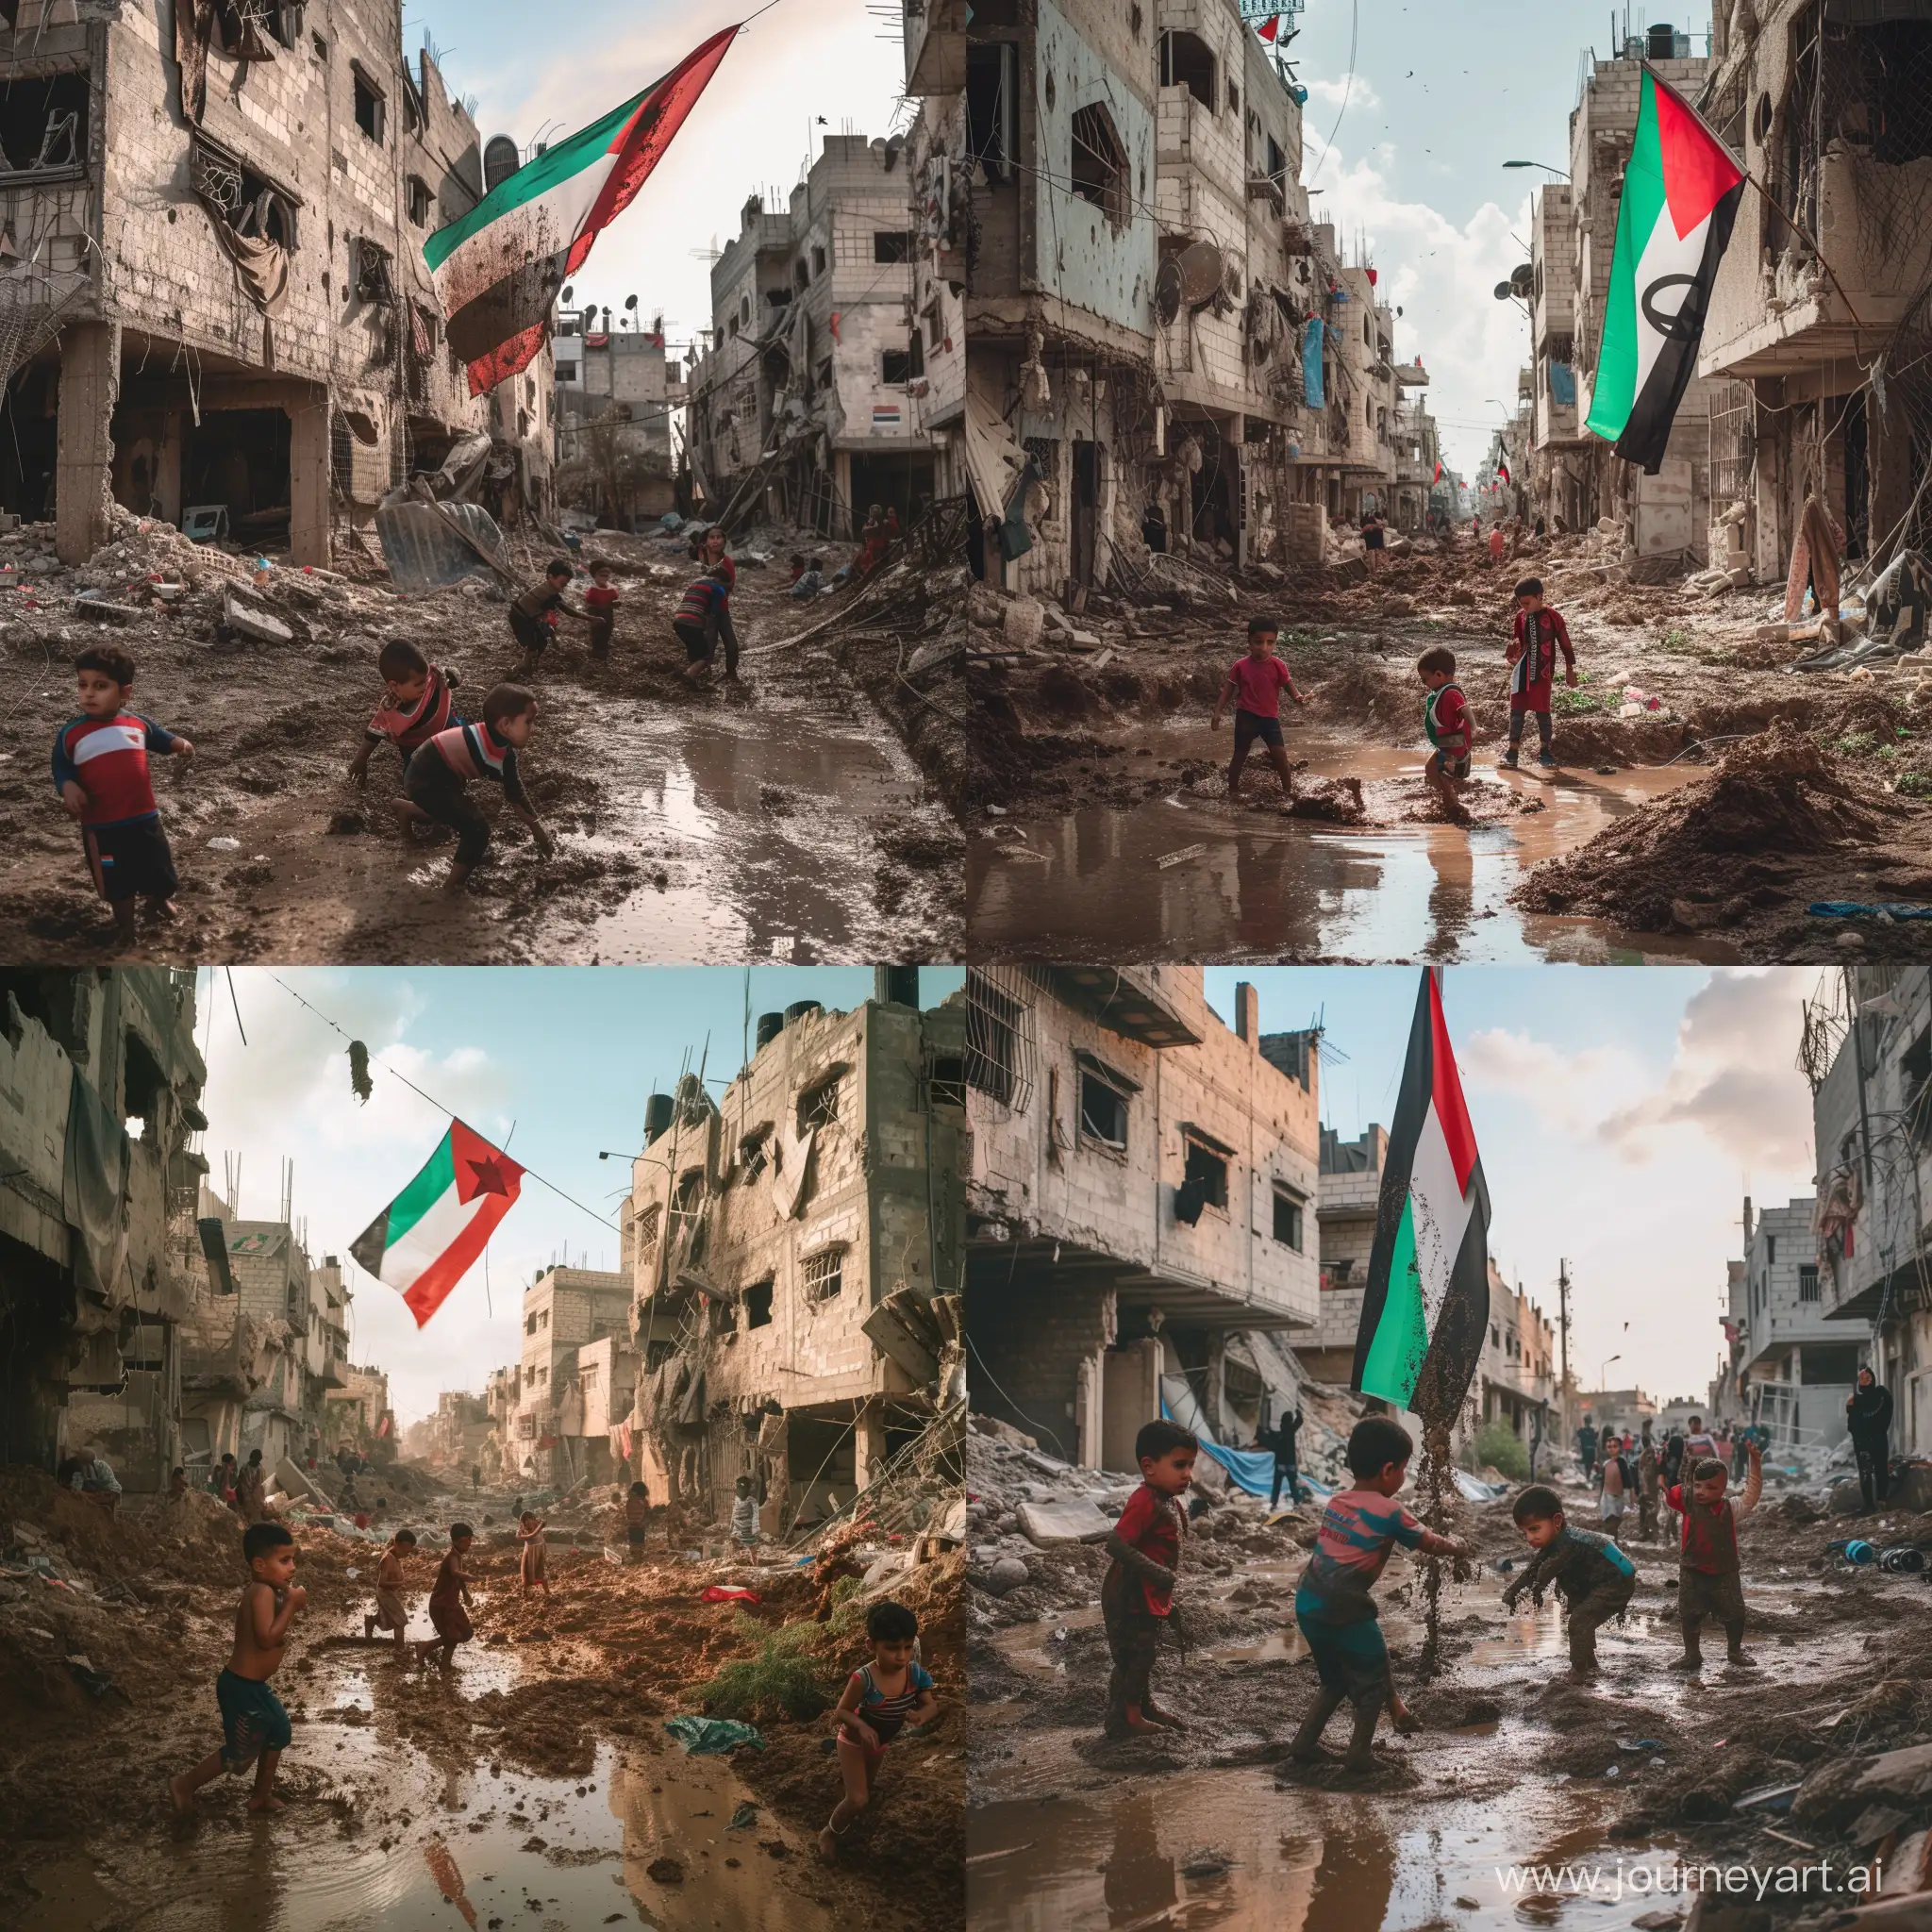 Gaza, Palestina, la foto está bañada por luz natural, edificios arrasados por las bombas, niños jugando en el barro, bandera palestina colgada sucia, configuración diurna, disparo en 4k con una cámara DSLR de alta gama como una Canon EOS R5 con objetivo de 50mm, f/1'2, vitalidad